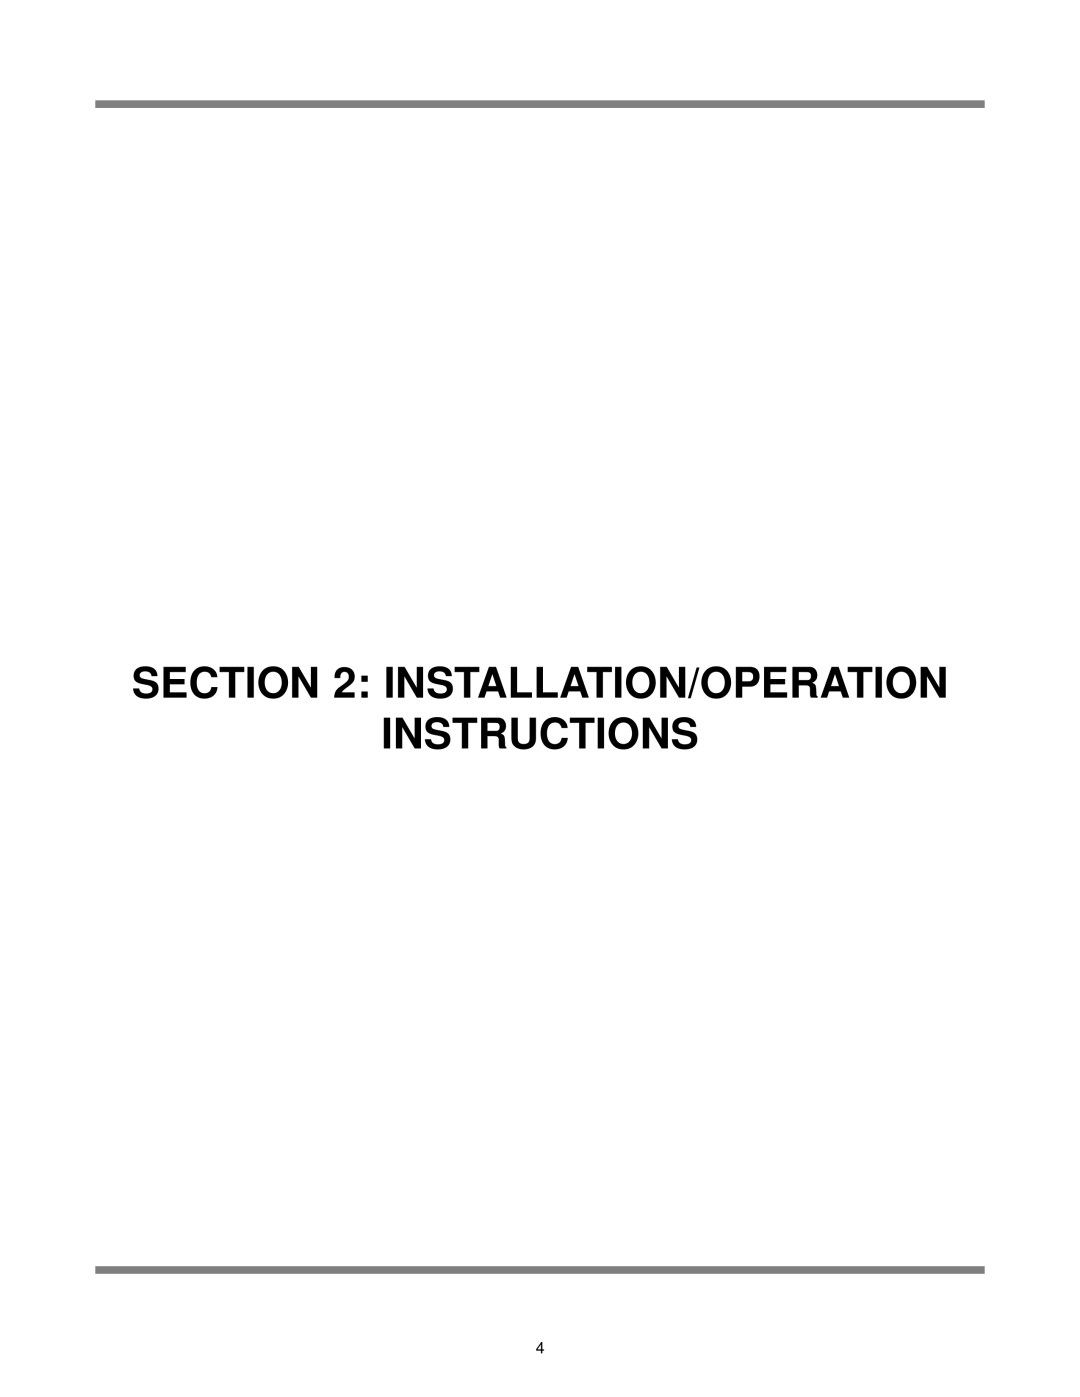 Jackson Delta 5, DELTA 5 D technical manual Installation/Operation Instructions 